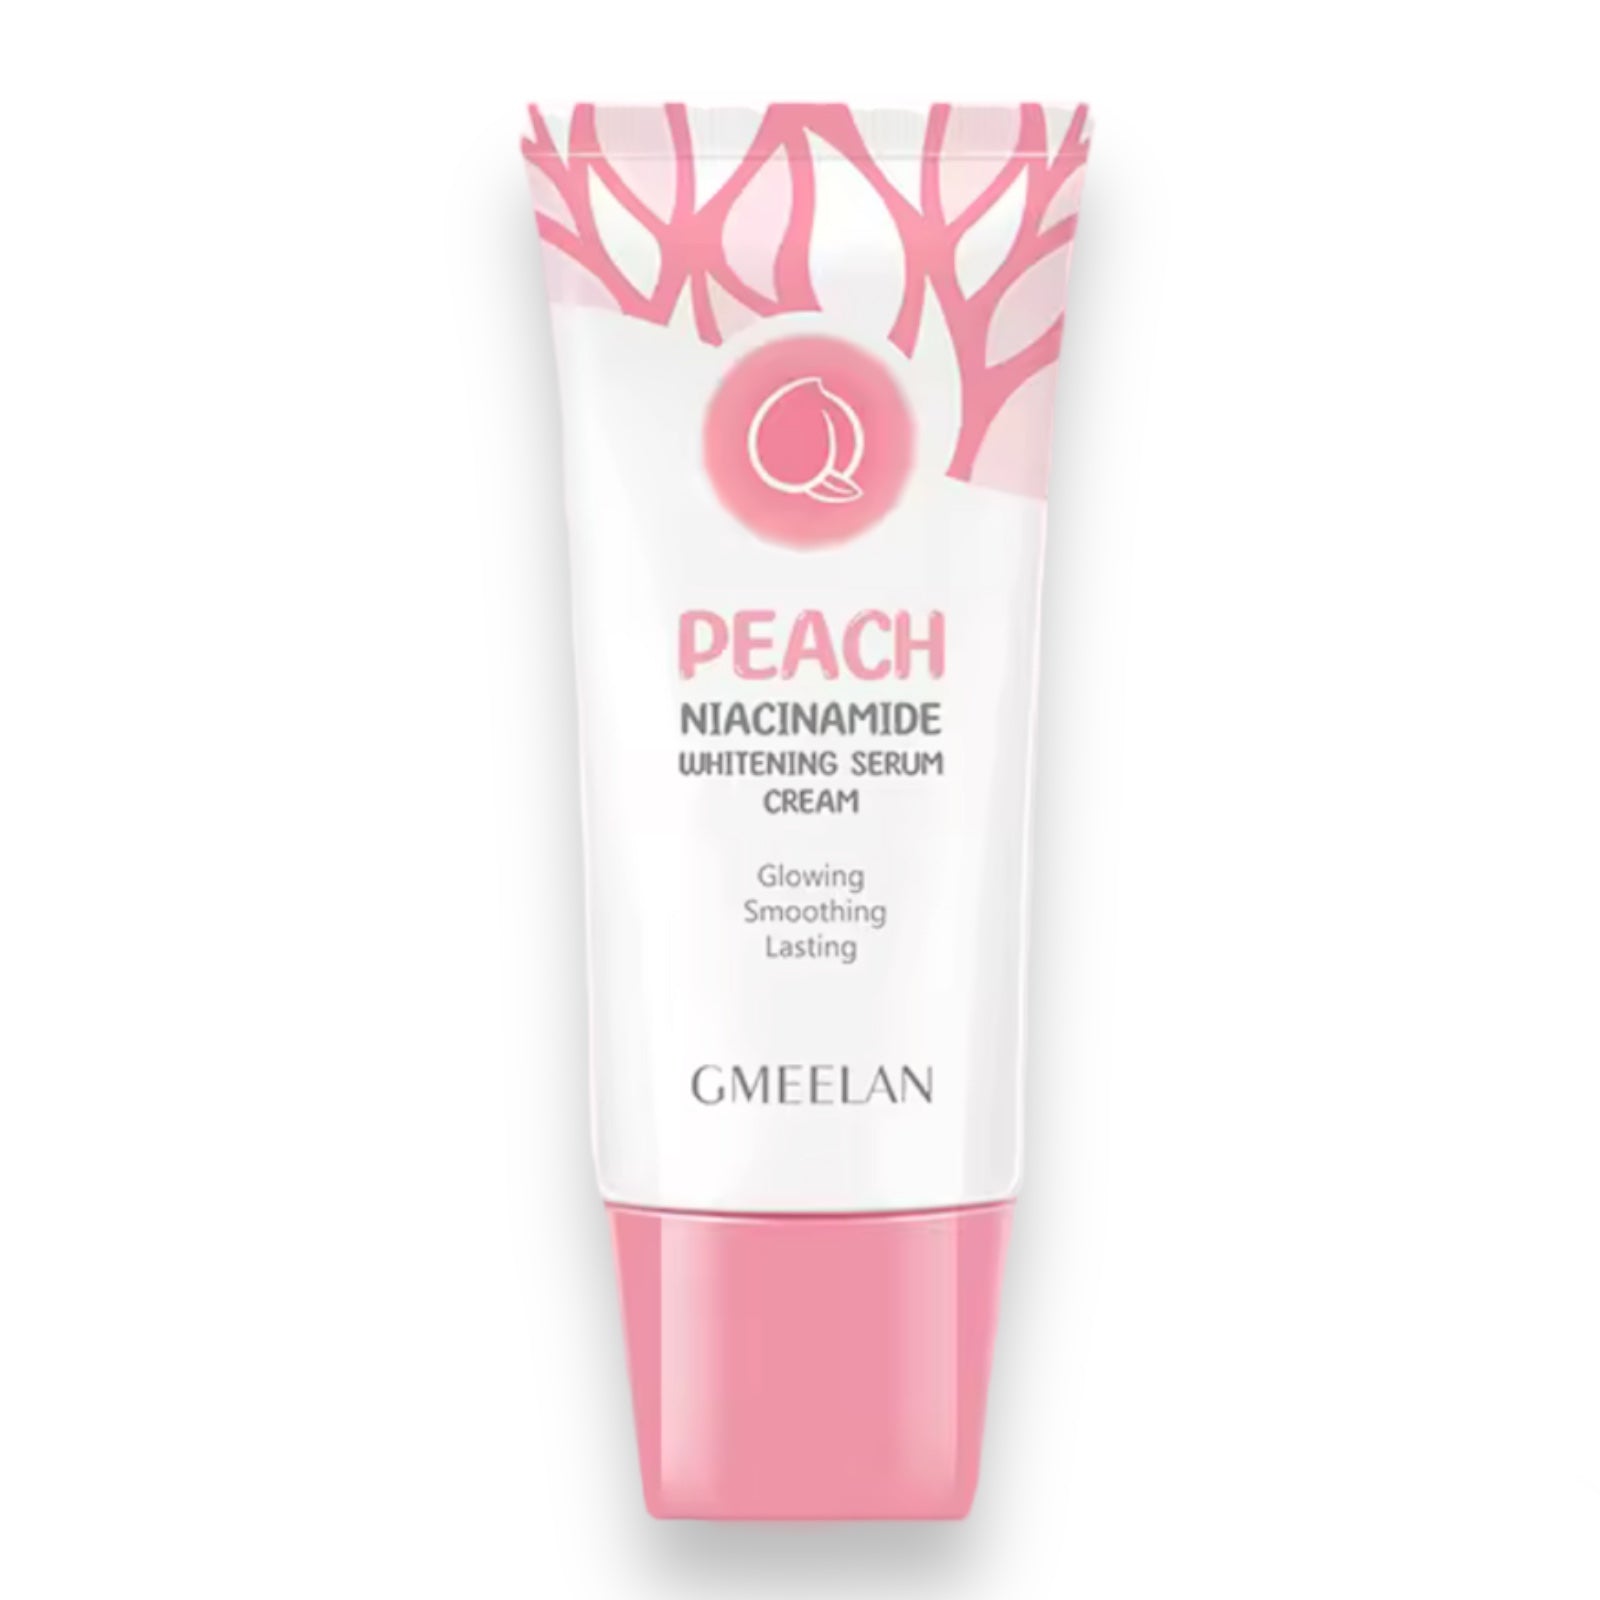 GMEELAN - Peach Niacinamide Whitening Serum Cream 50g